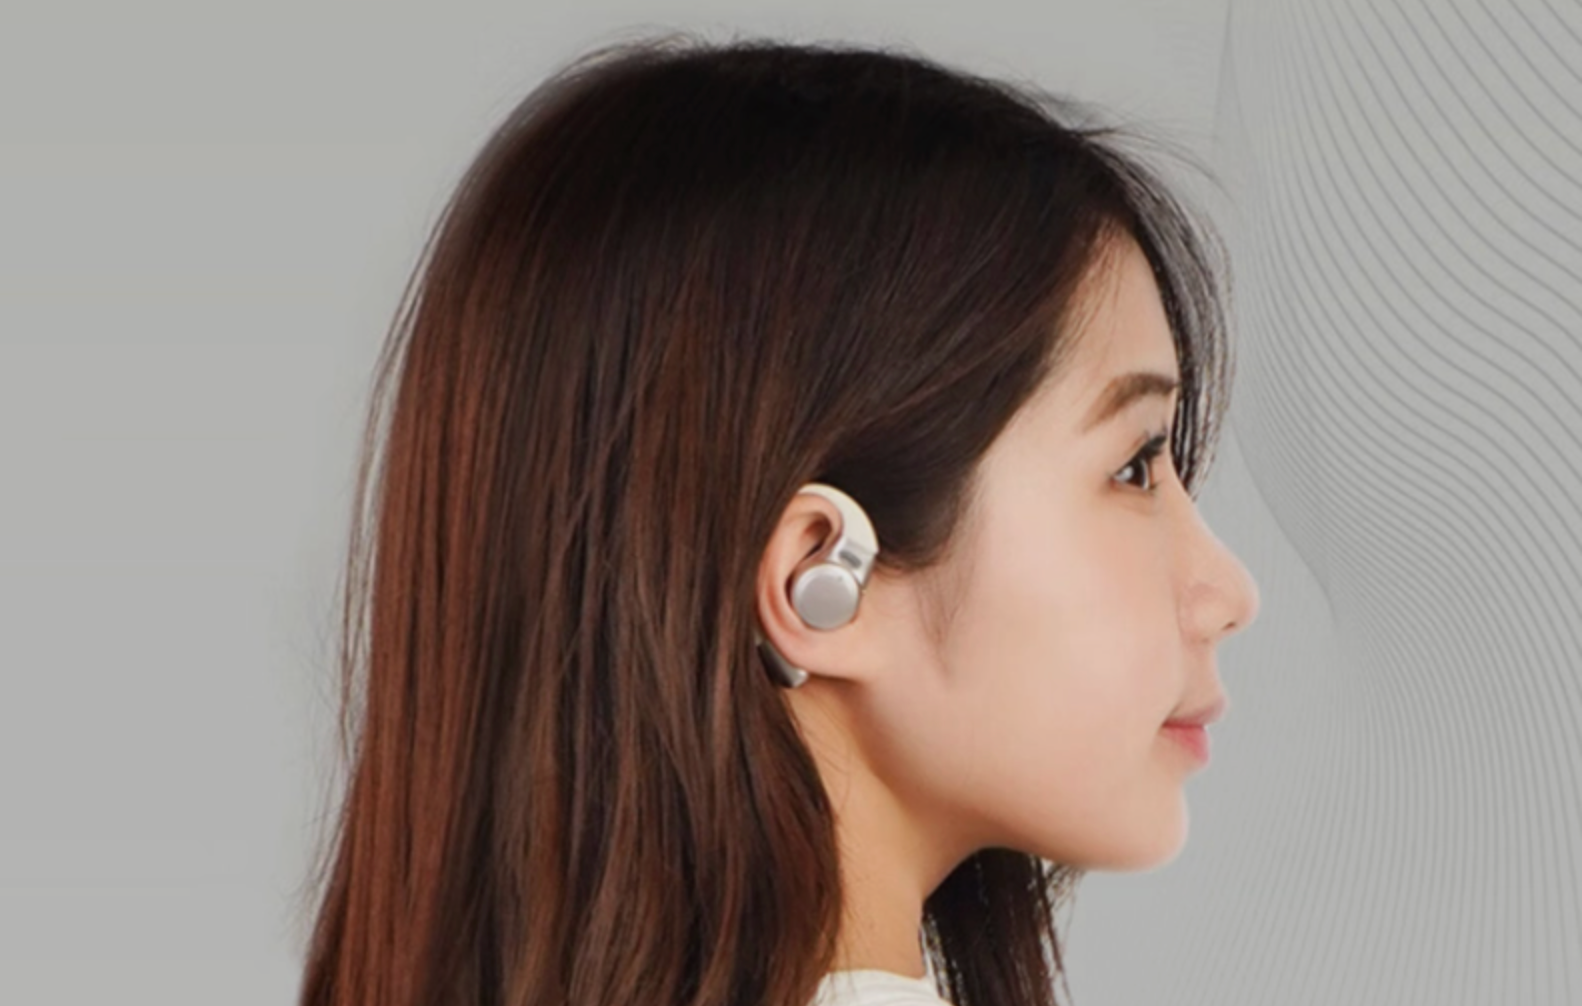 Meizu zaprezentowało wyjątkowe słuchawki bezprzewodowe OpenBlus 2